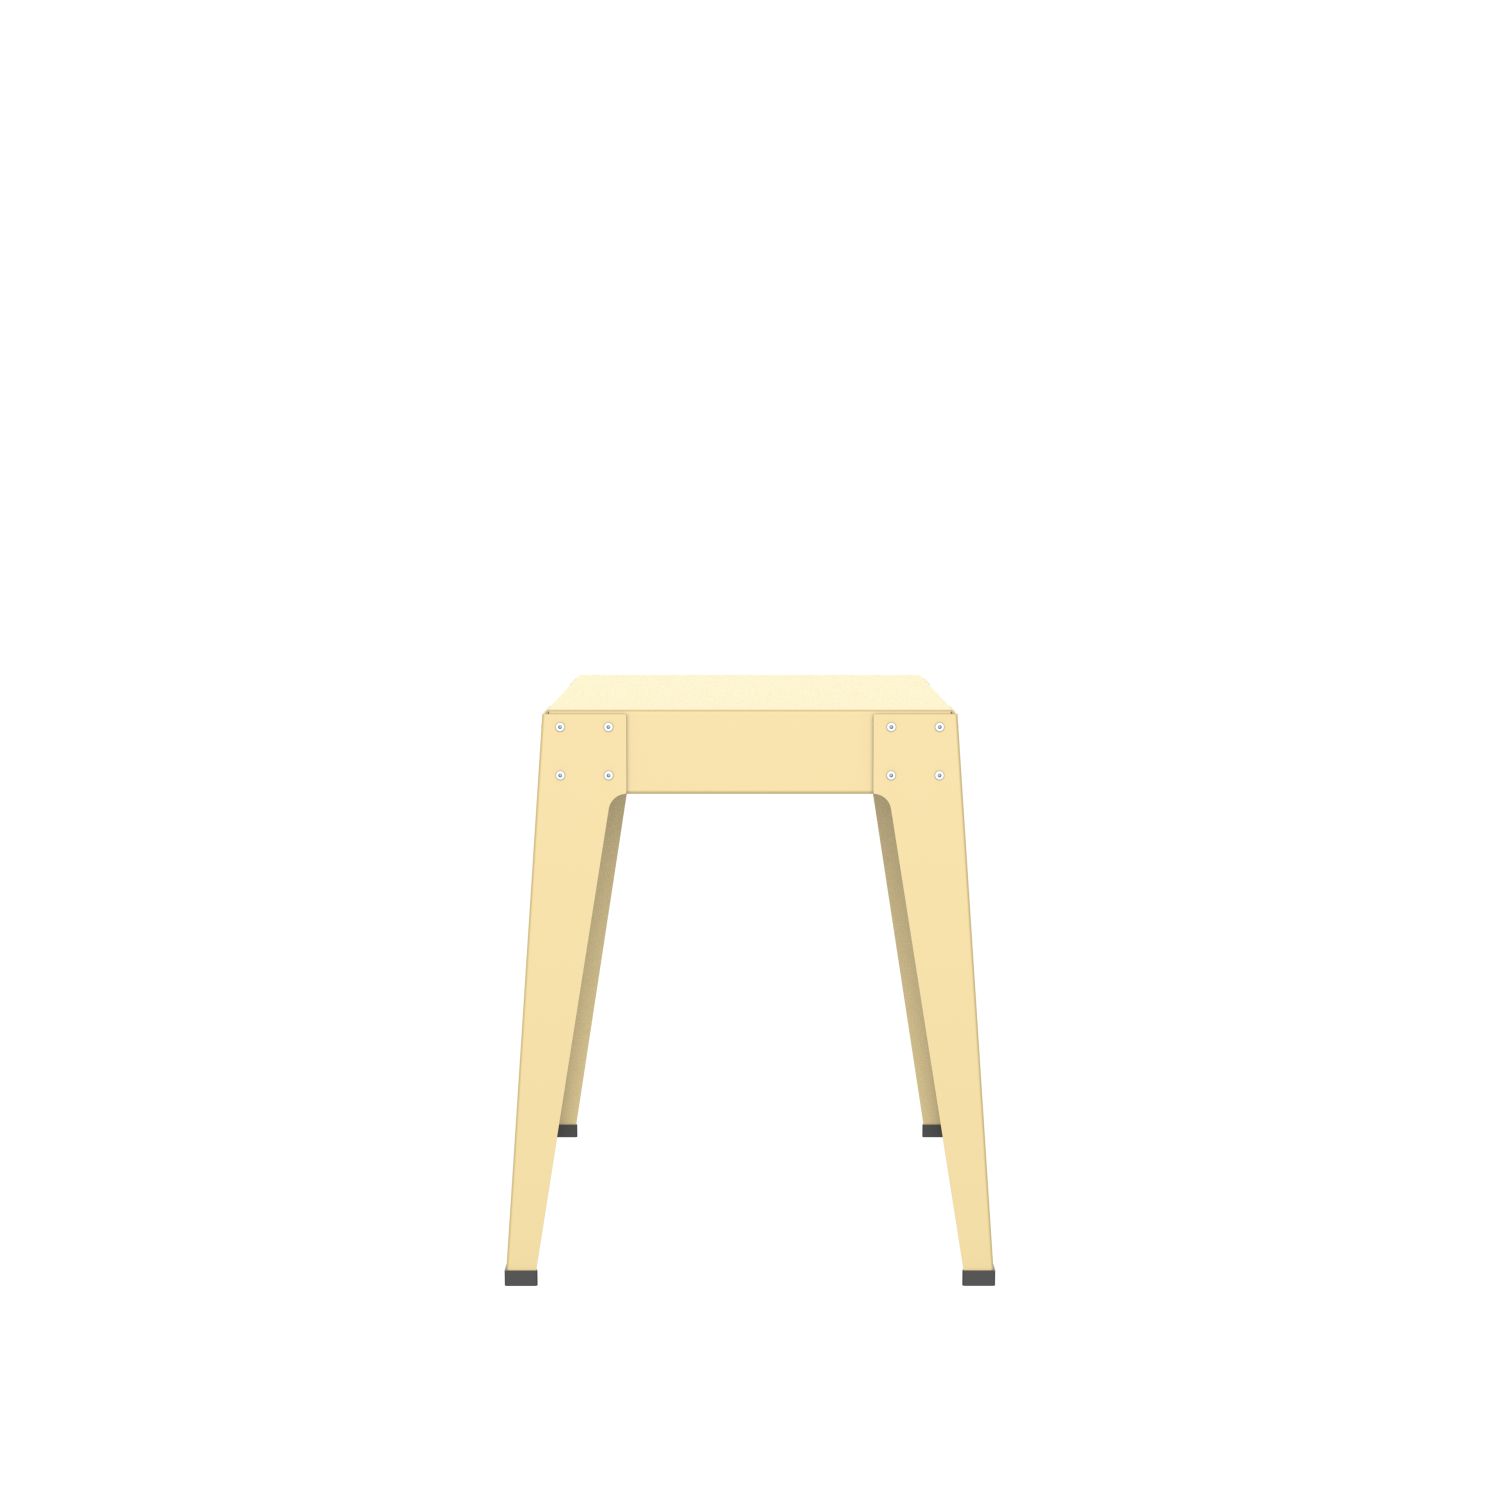 lensvelt piet hein eek aluminium series stool green beige ral1000 soft leg ends